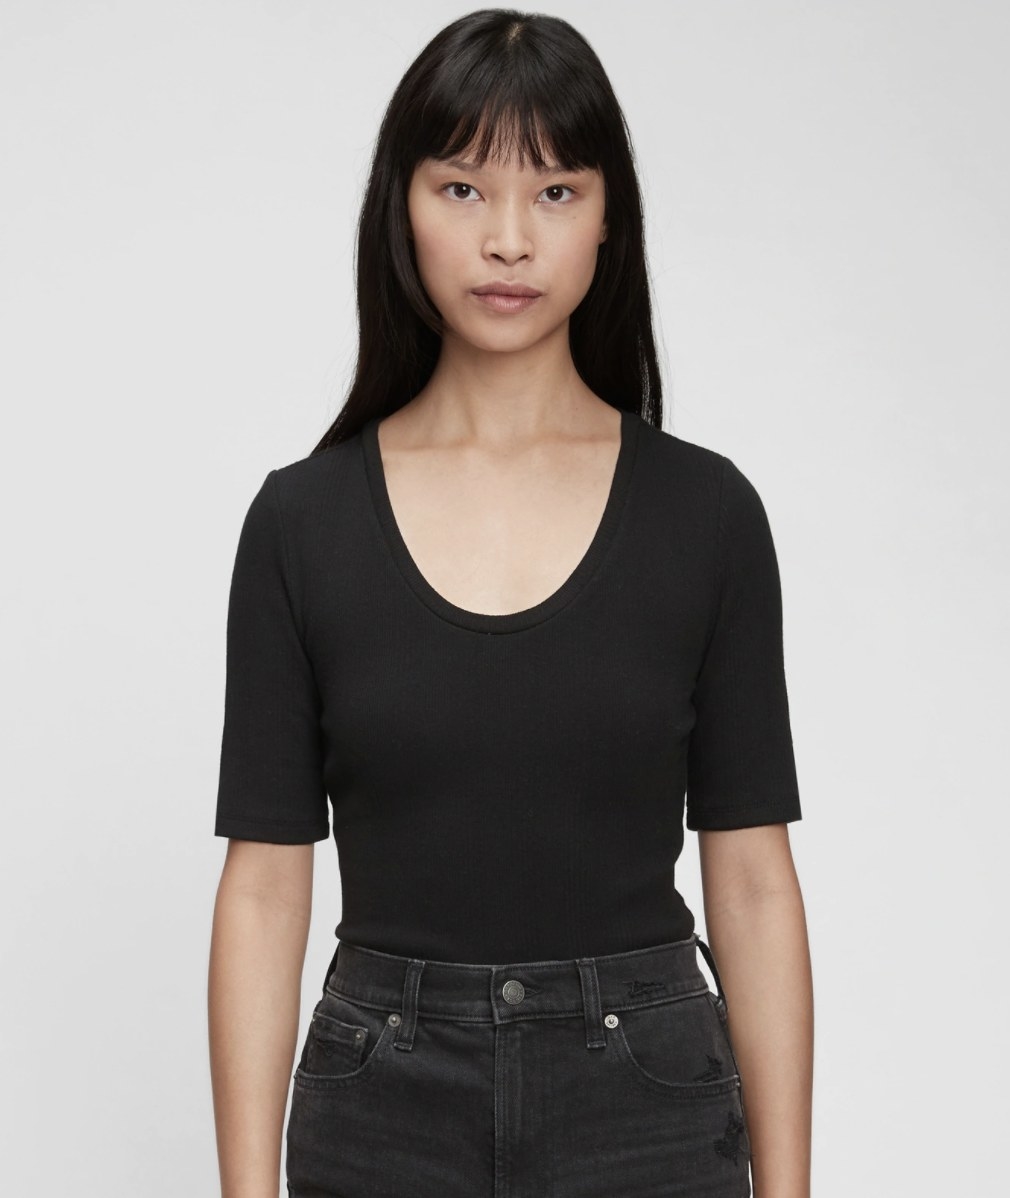 a model wearing the bodysuit in black